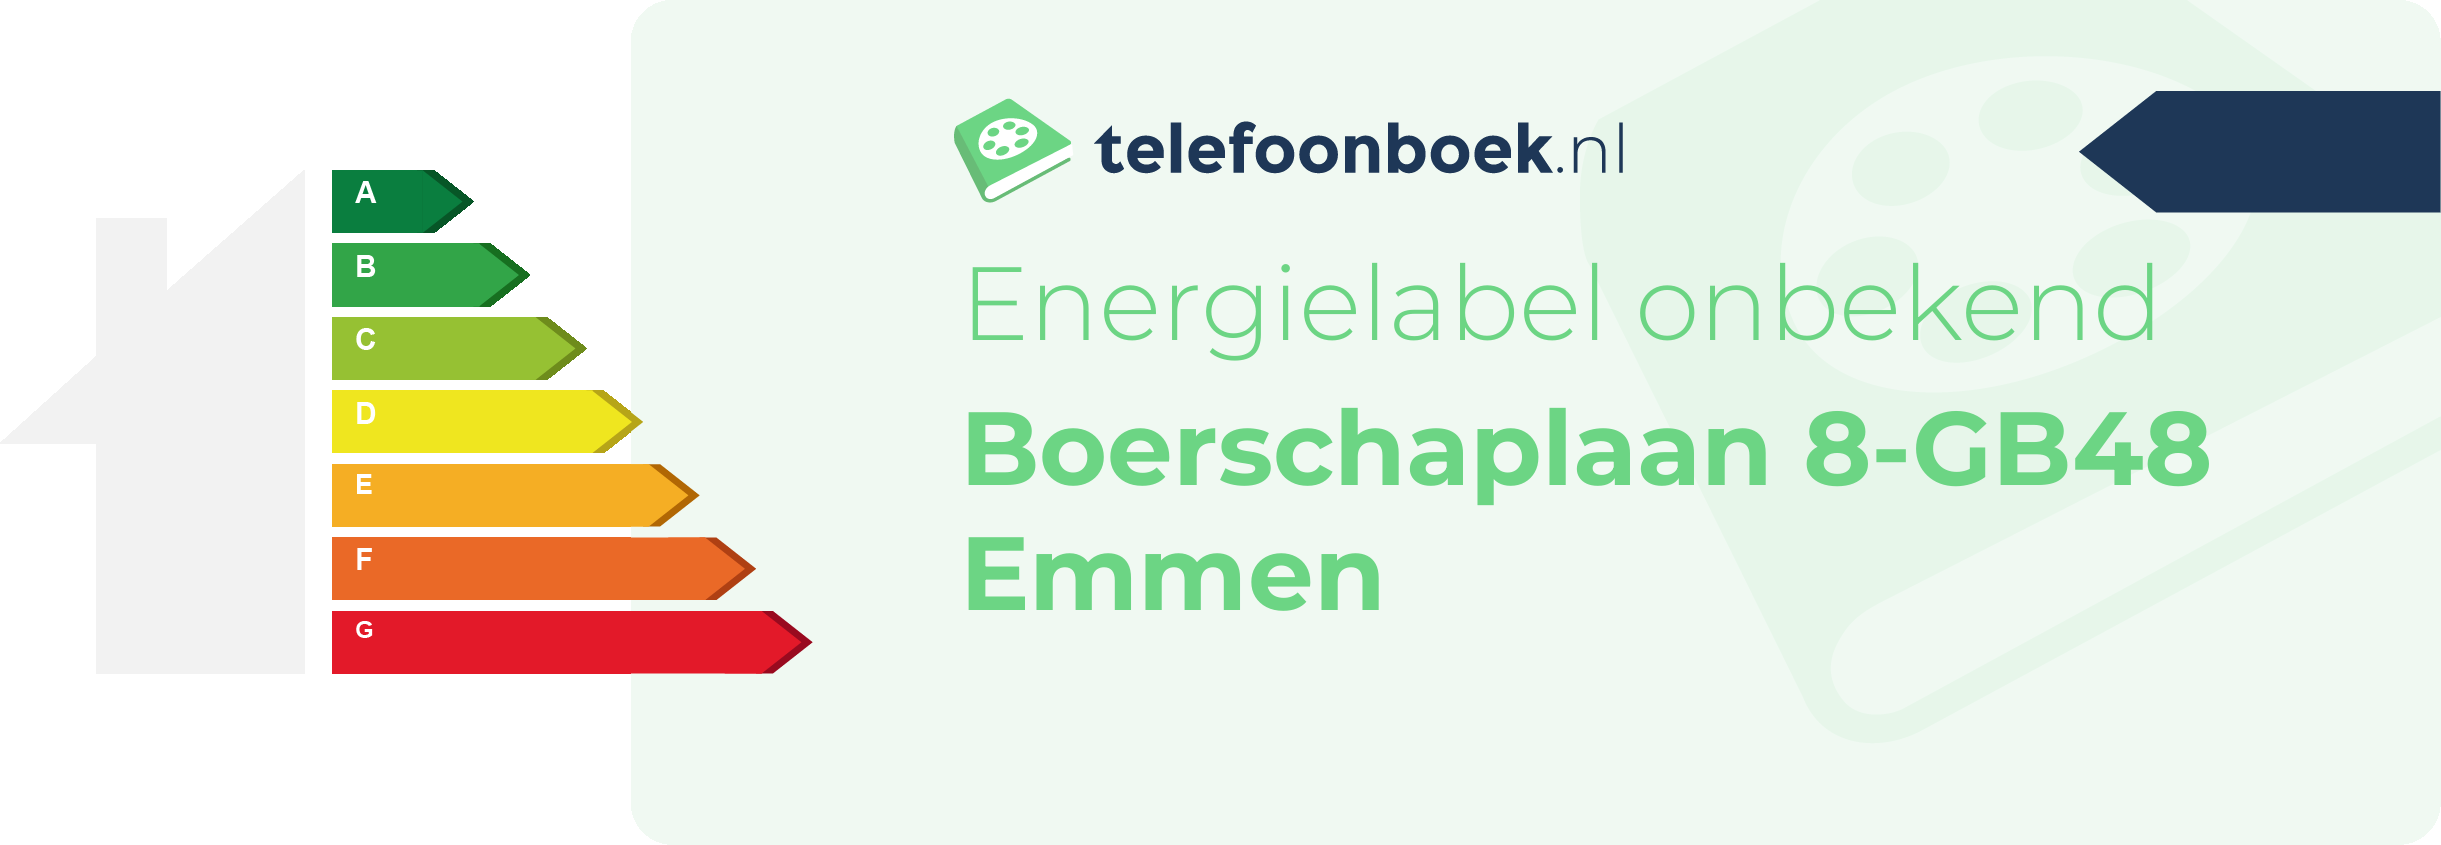 Energielabel Boerschaplaan 8-GB48 Emmen